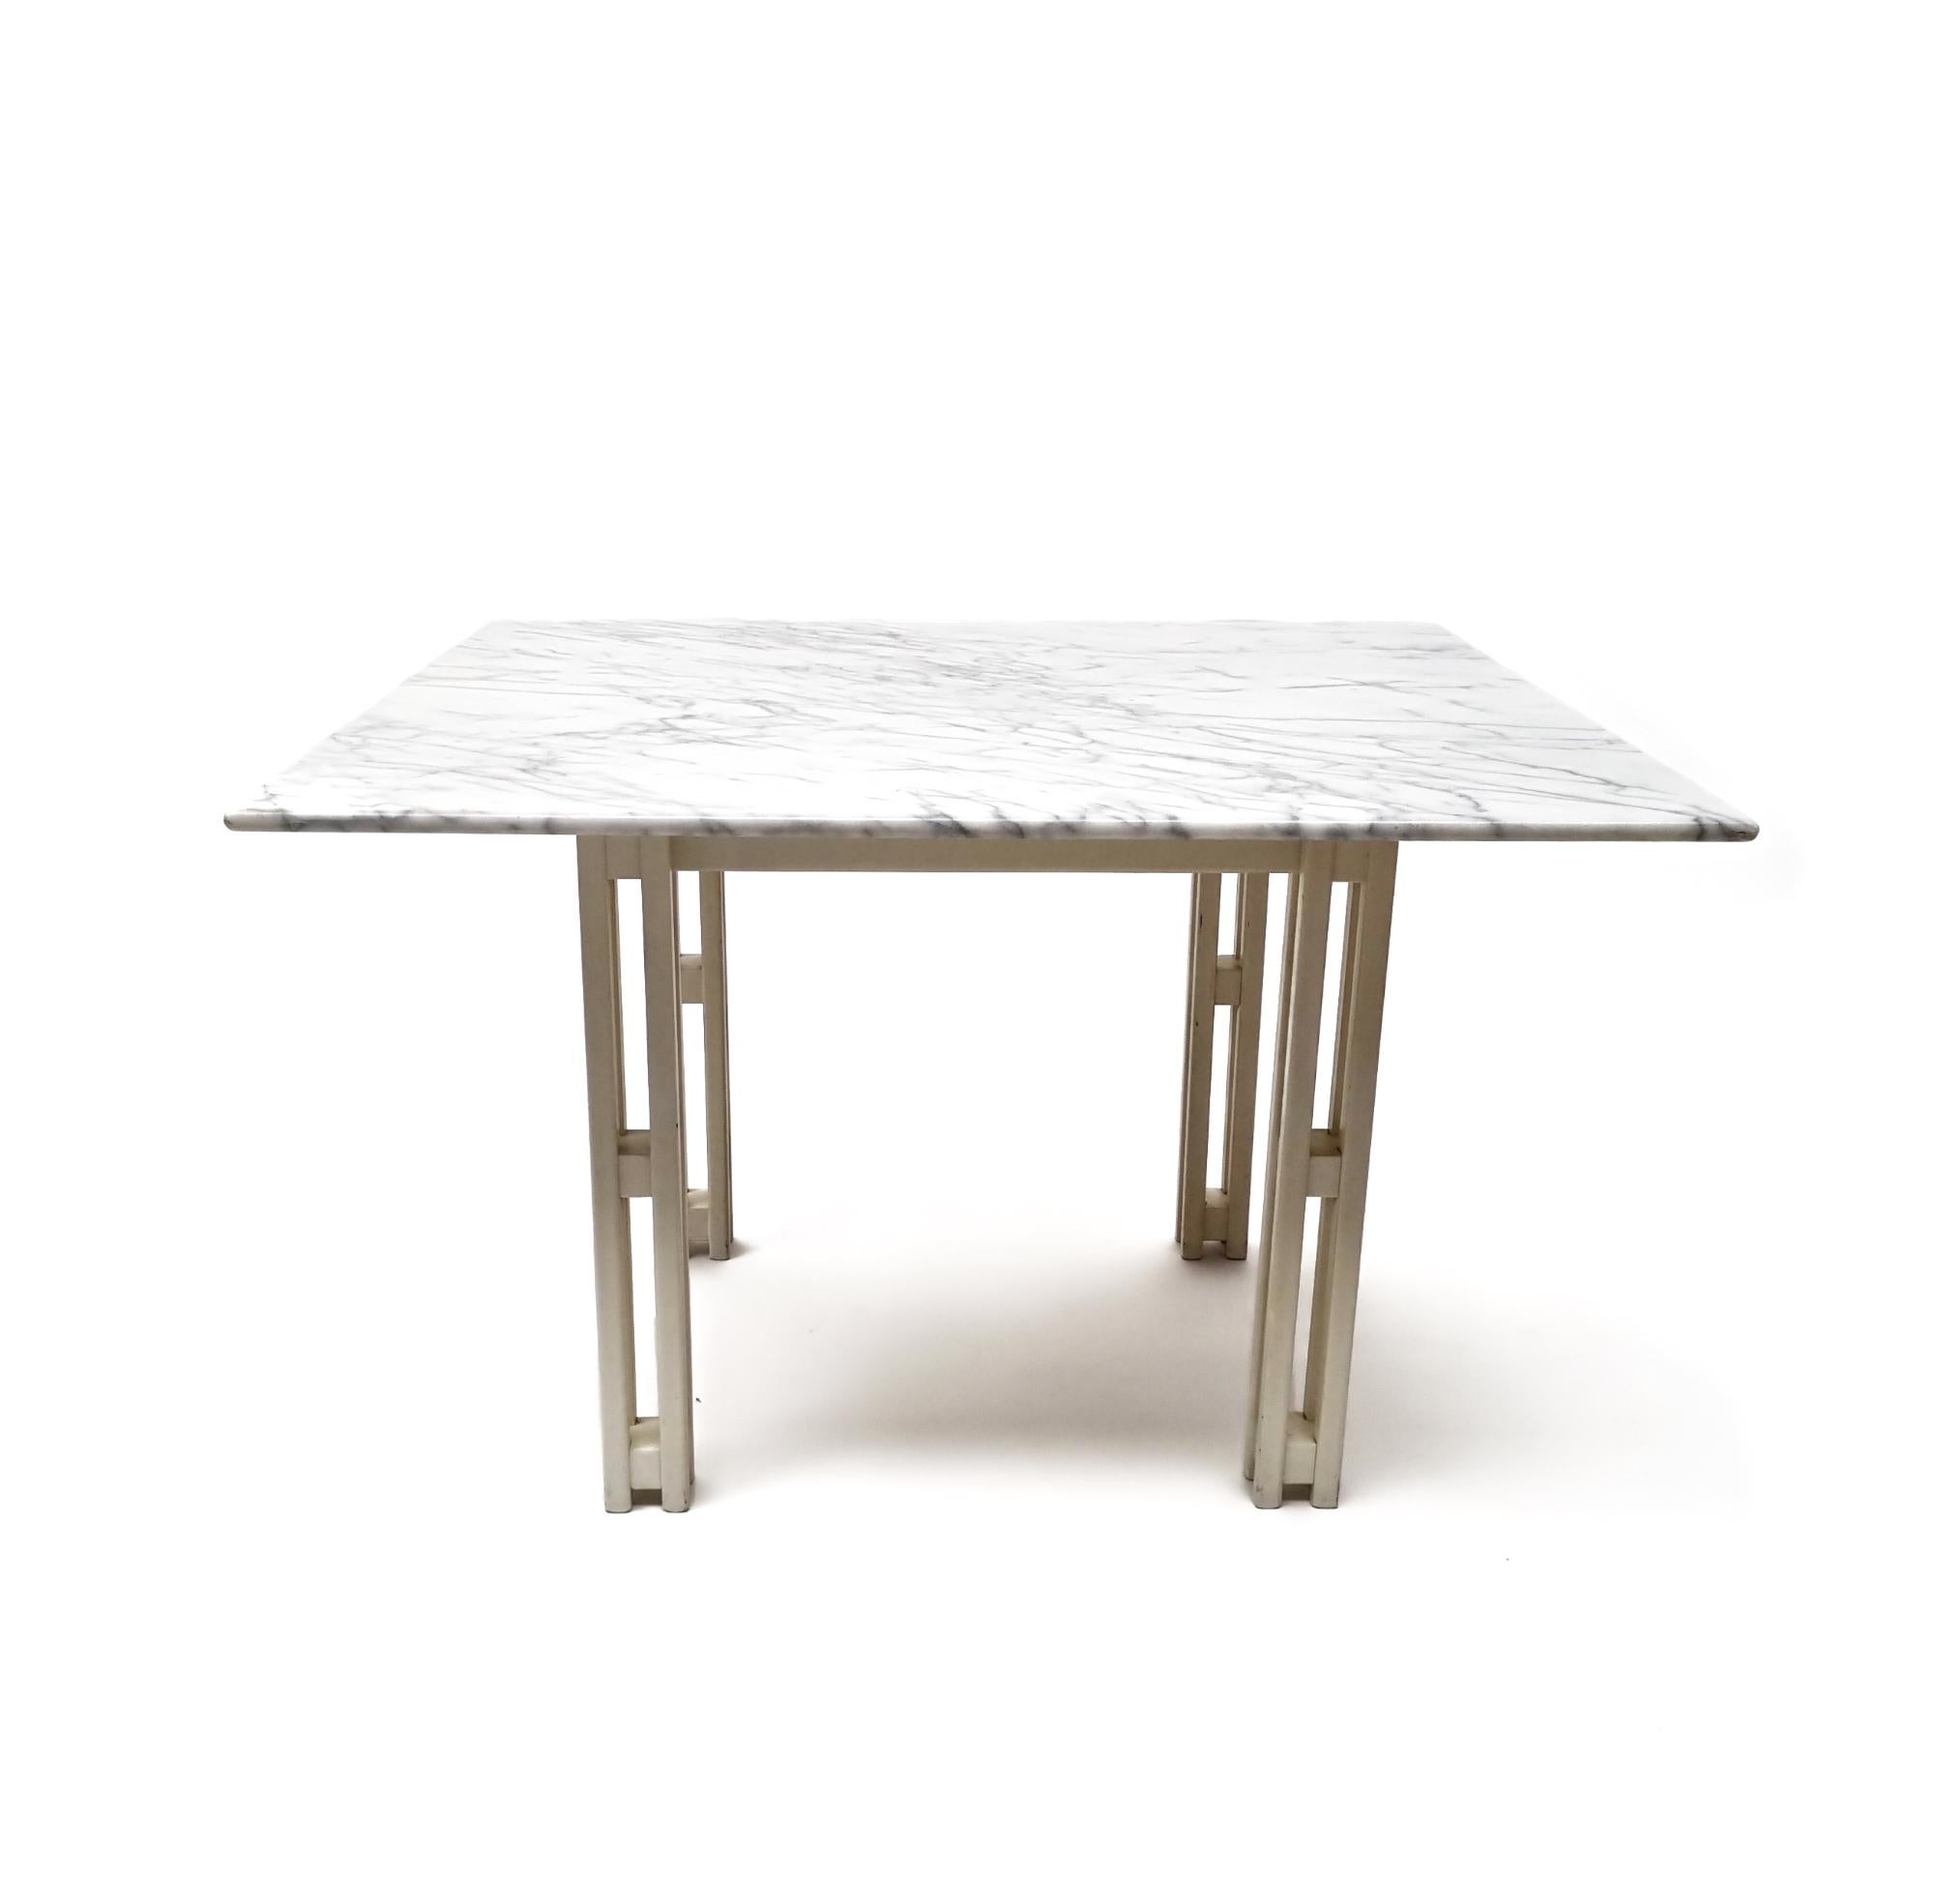 Erhöhen Sie Ihr Esserlebnis mit diesem Esstisch aus italienischem Marmor und Buchenholz!

Die Eleganz des quadratischen Designs wird durch eine wunderschön geflammte Platte aus Carrara-Marmor ergänzt, während die Beine aus weißem Buchenholz einen